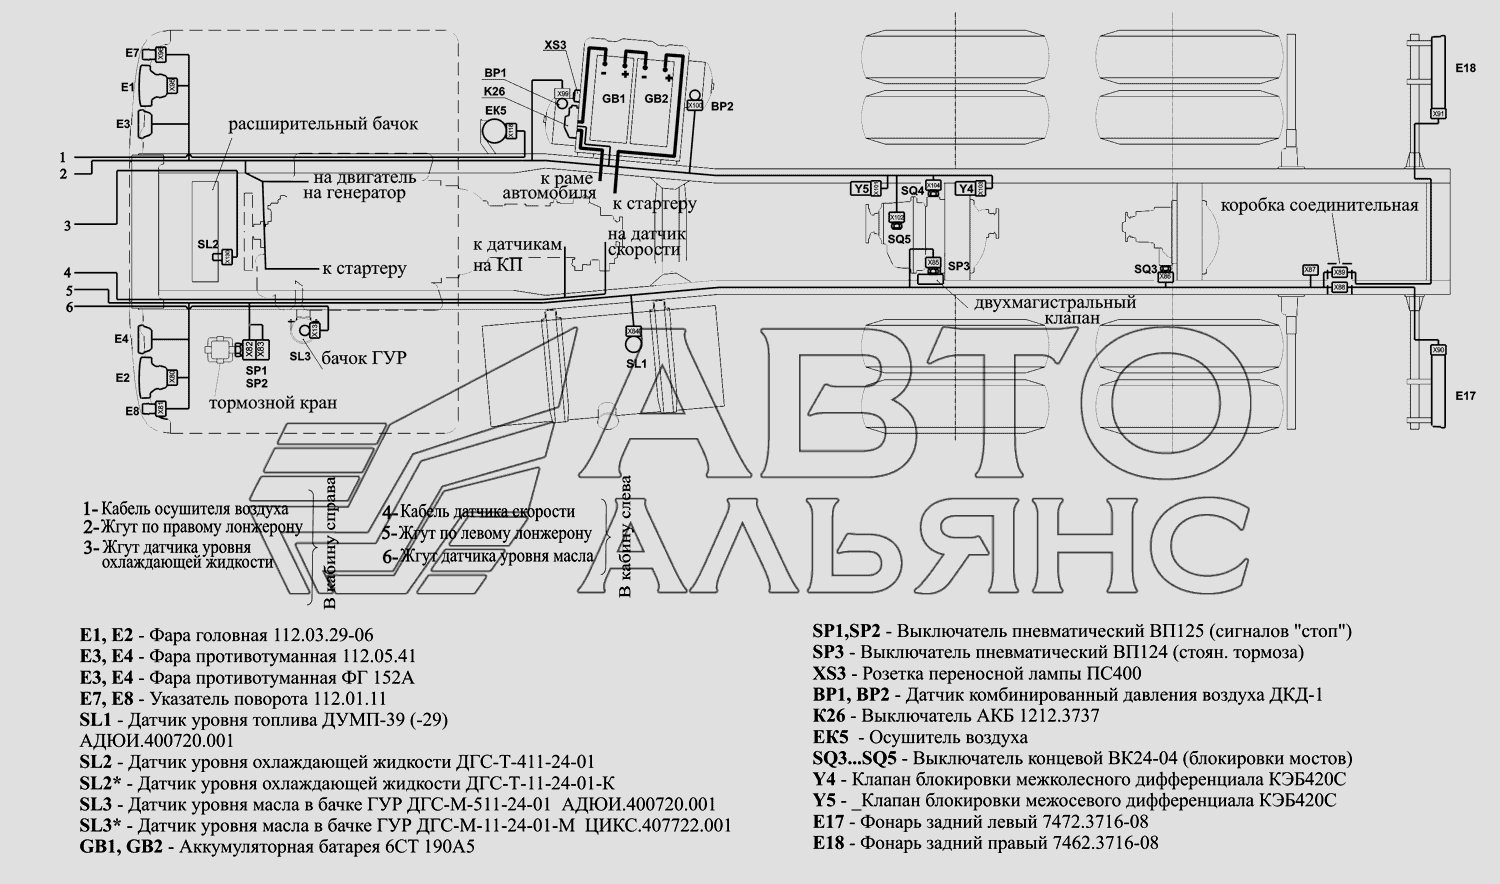 Расположение разъемов и элементов электрооборудования на шасси МАЗ-630333